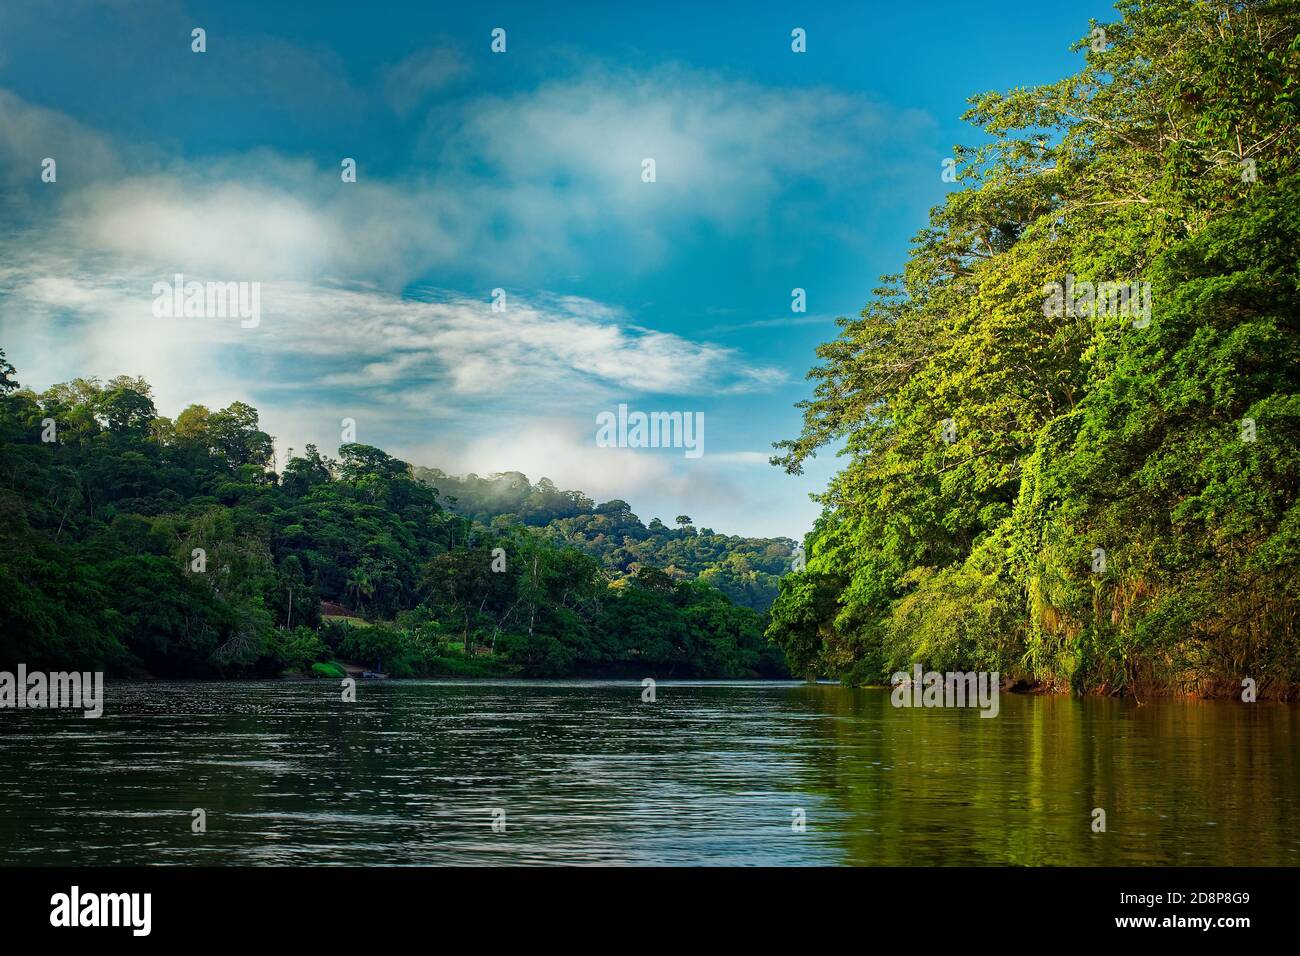 Costa Rica paisaje de Boca Tapada, Rio San Carlos. Riverside con prados y vacas, bosque nublado tropical en el fondo. Vista desde el barco. Foto de stock